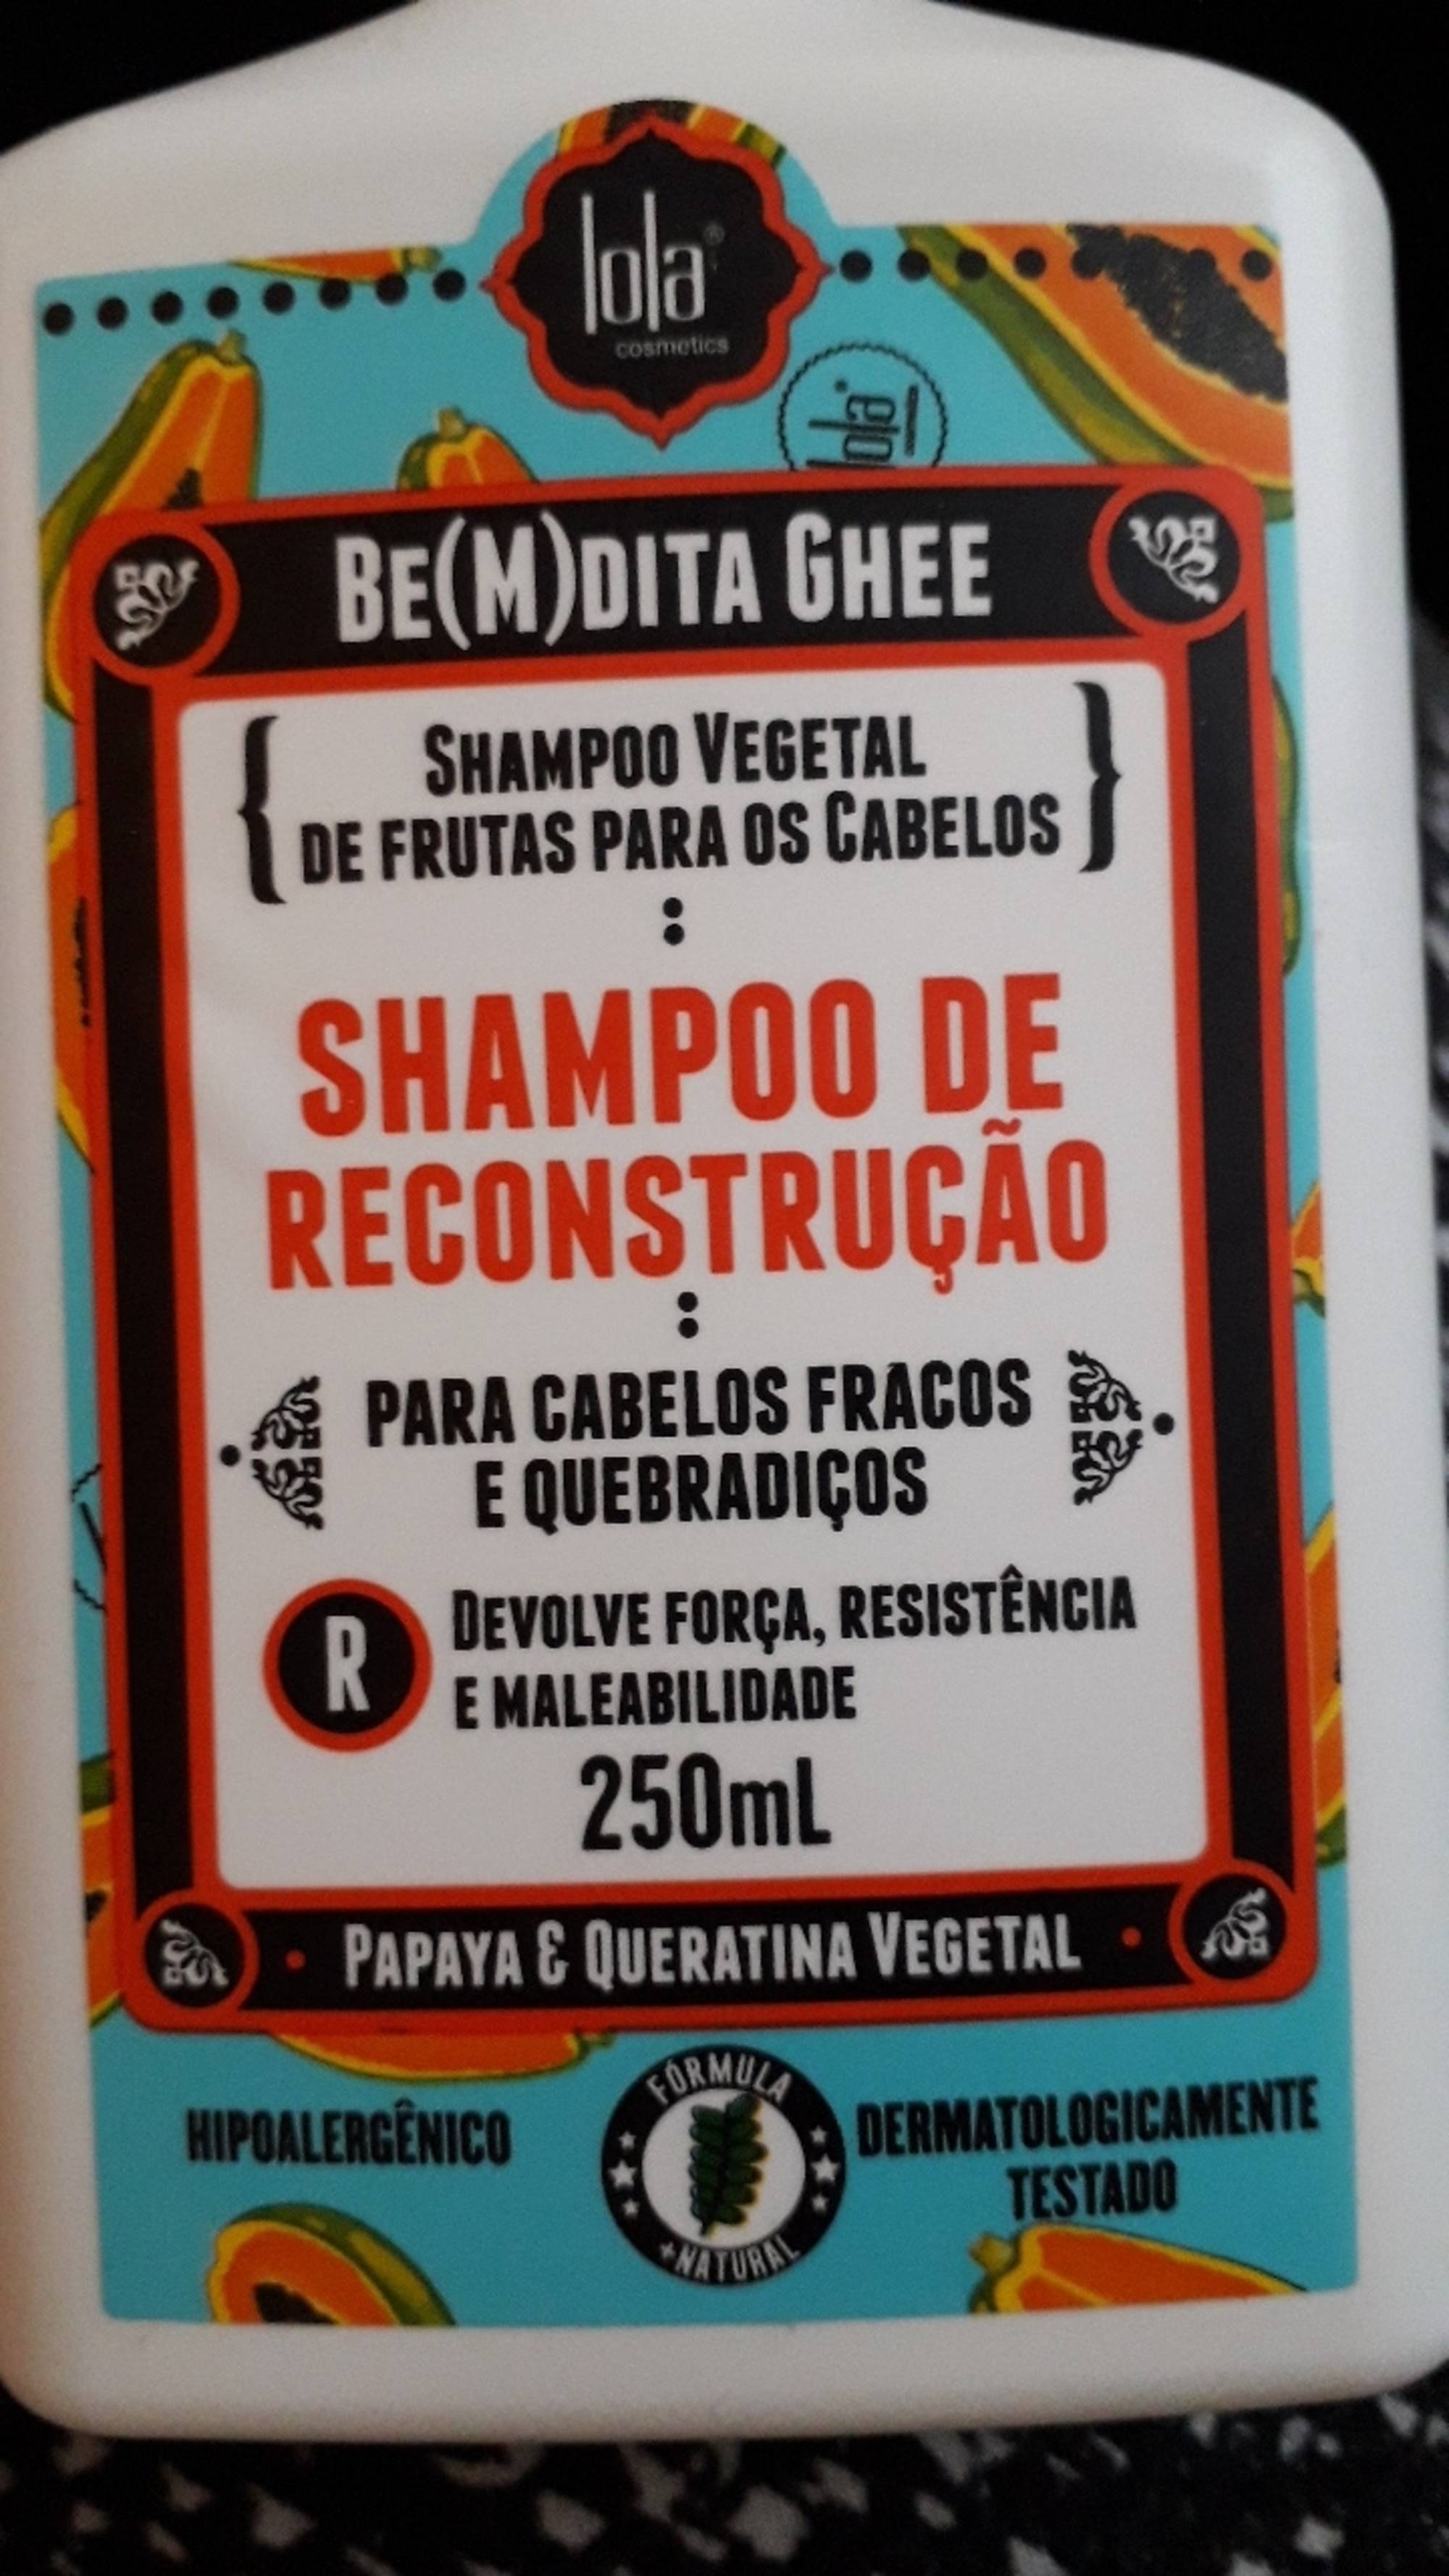 LOLA COSMETICS - Be(M)dita Ghee - Shampoo de reconstrução